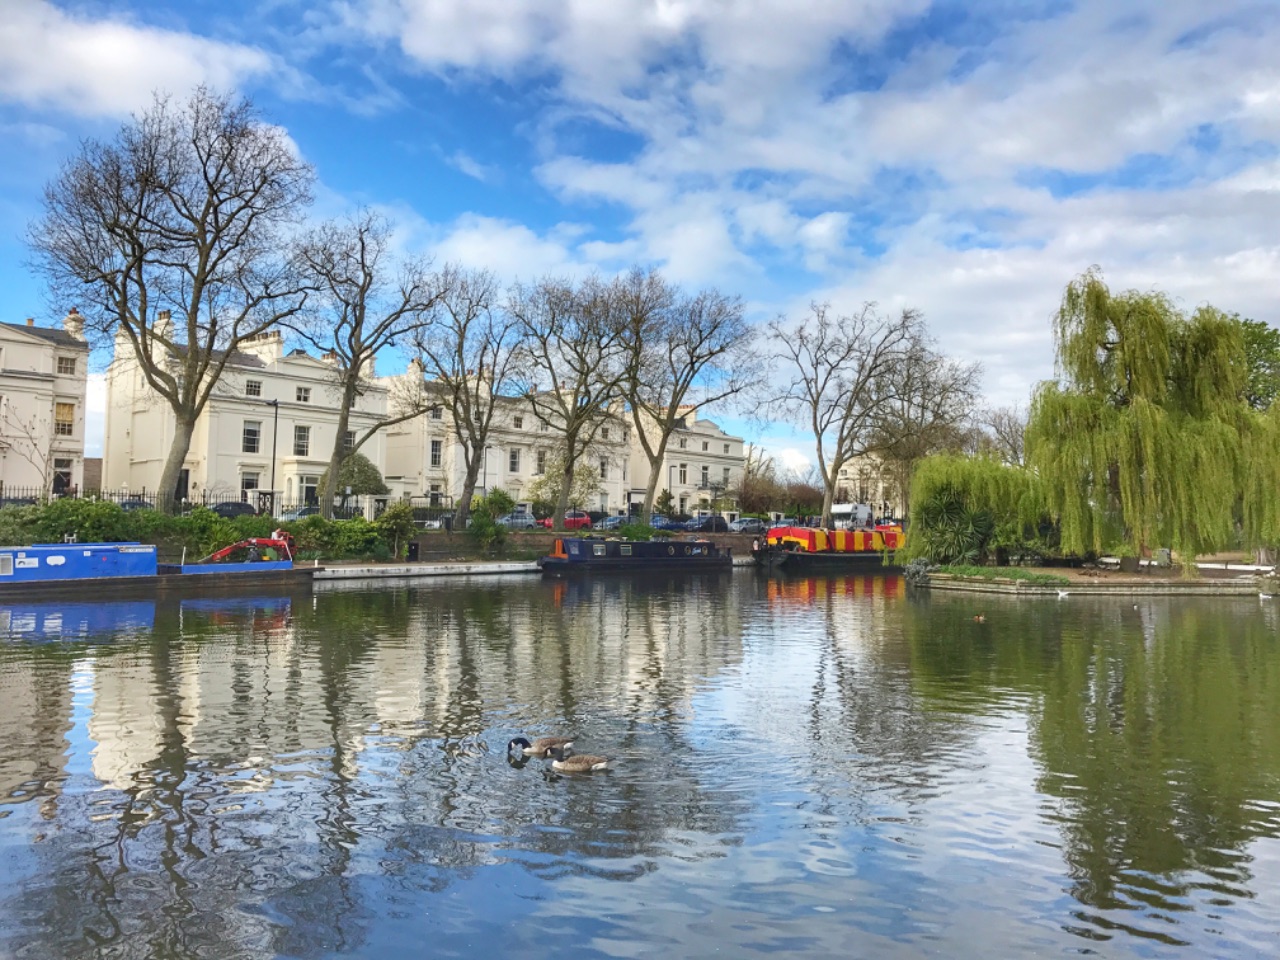 Walk along Regent's Canal